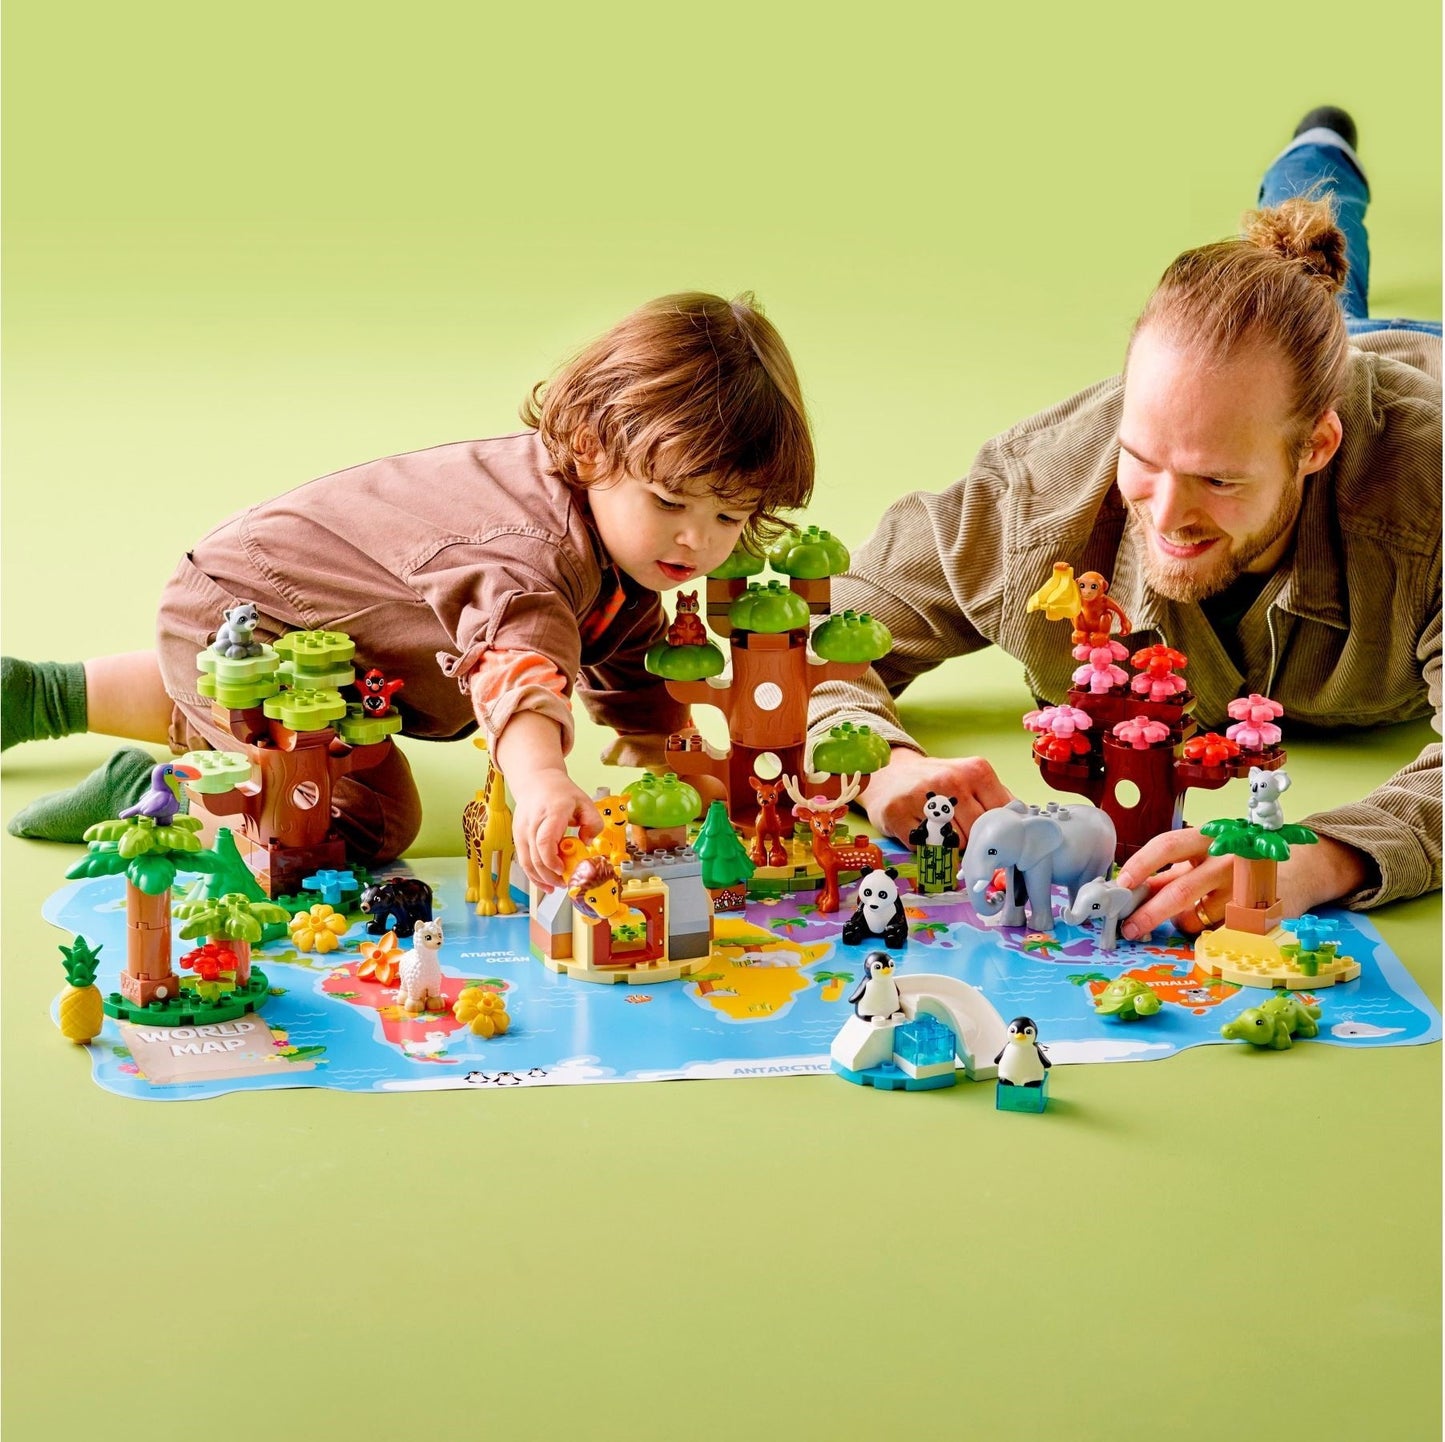 Set de constructie LEGO Duplo - Animale salbatice ale lumii 10975, 142 piese